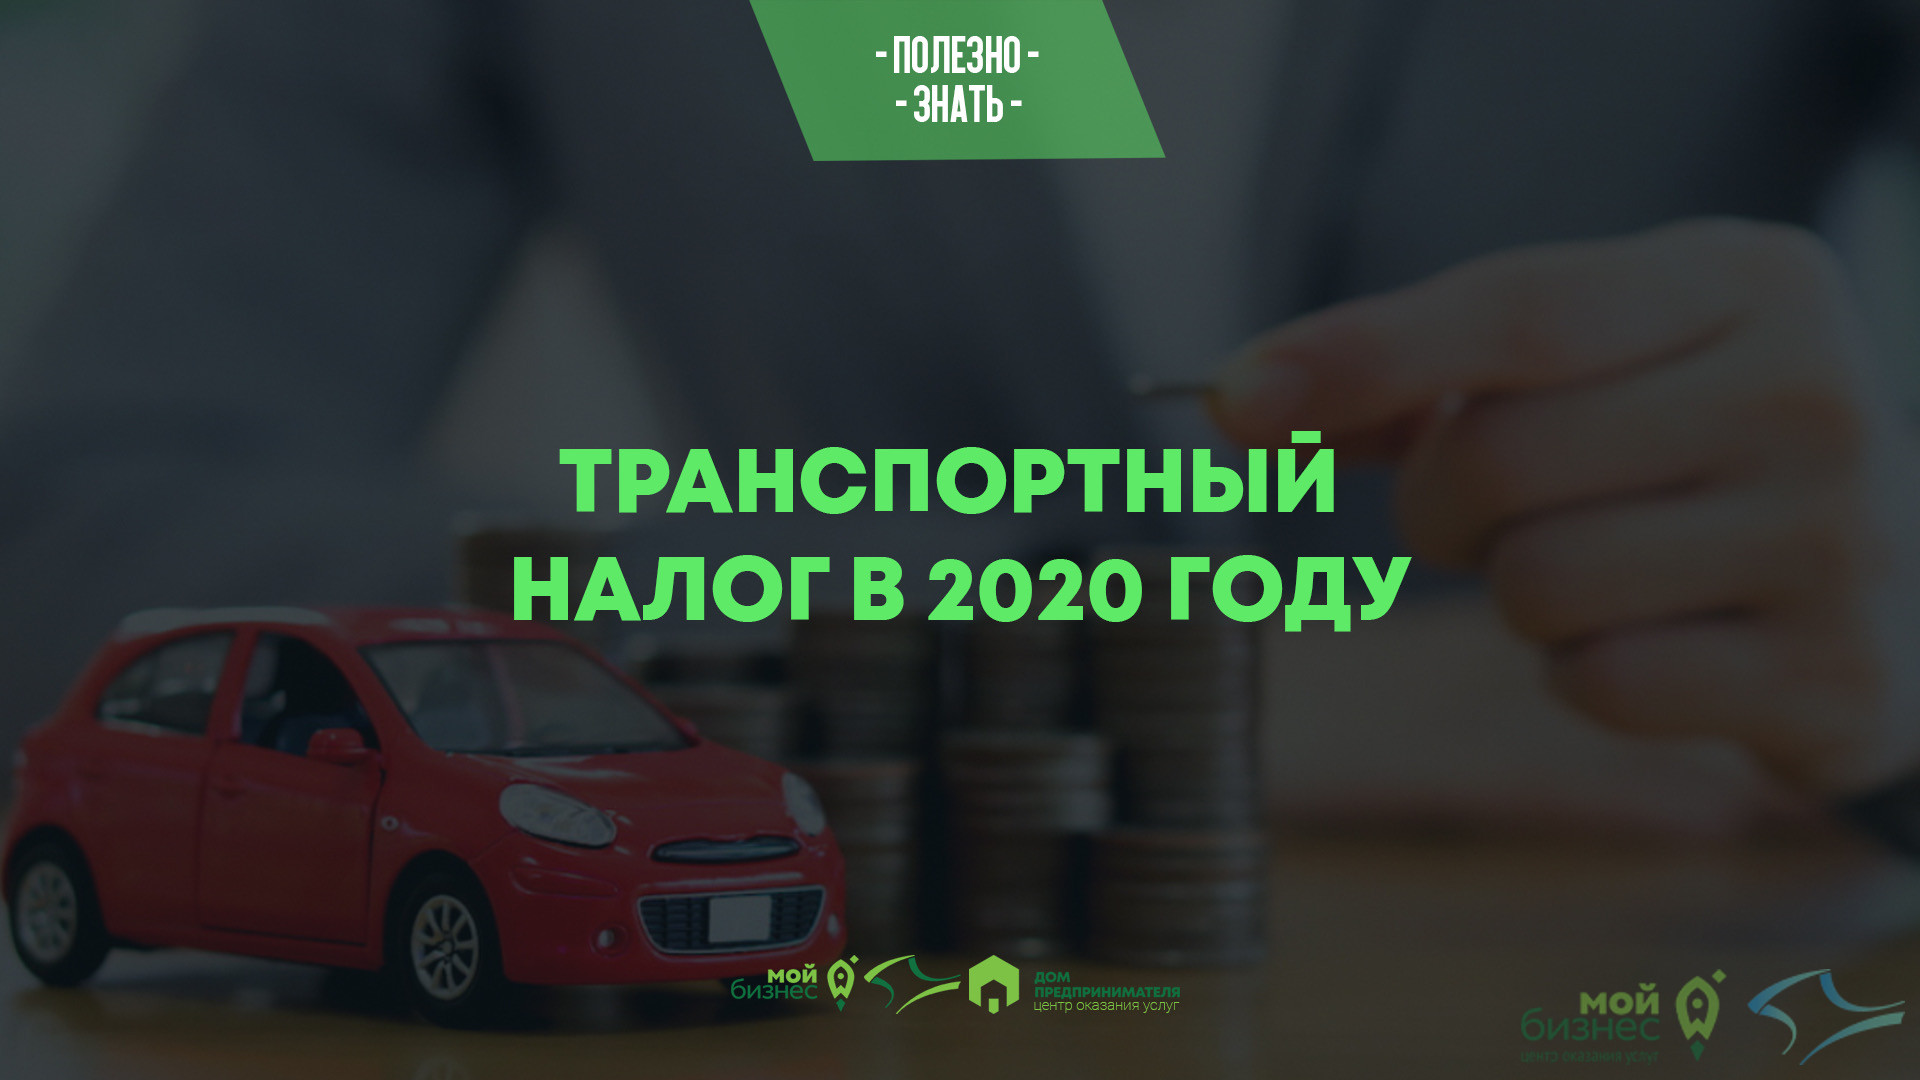 Транспортный налог в 2020 году: изменения